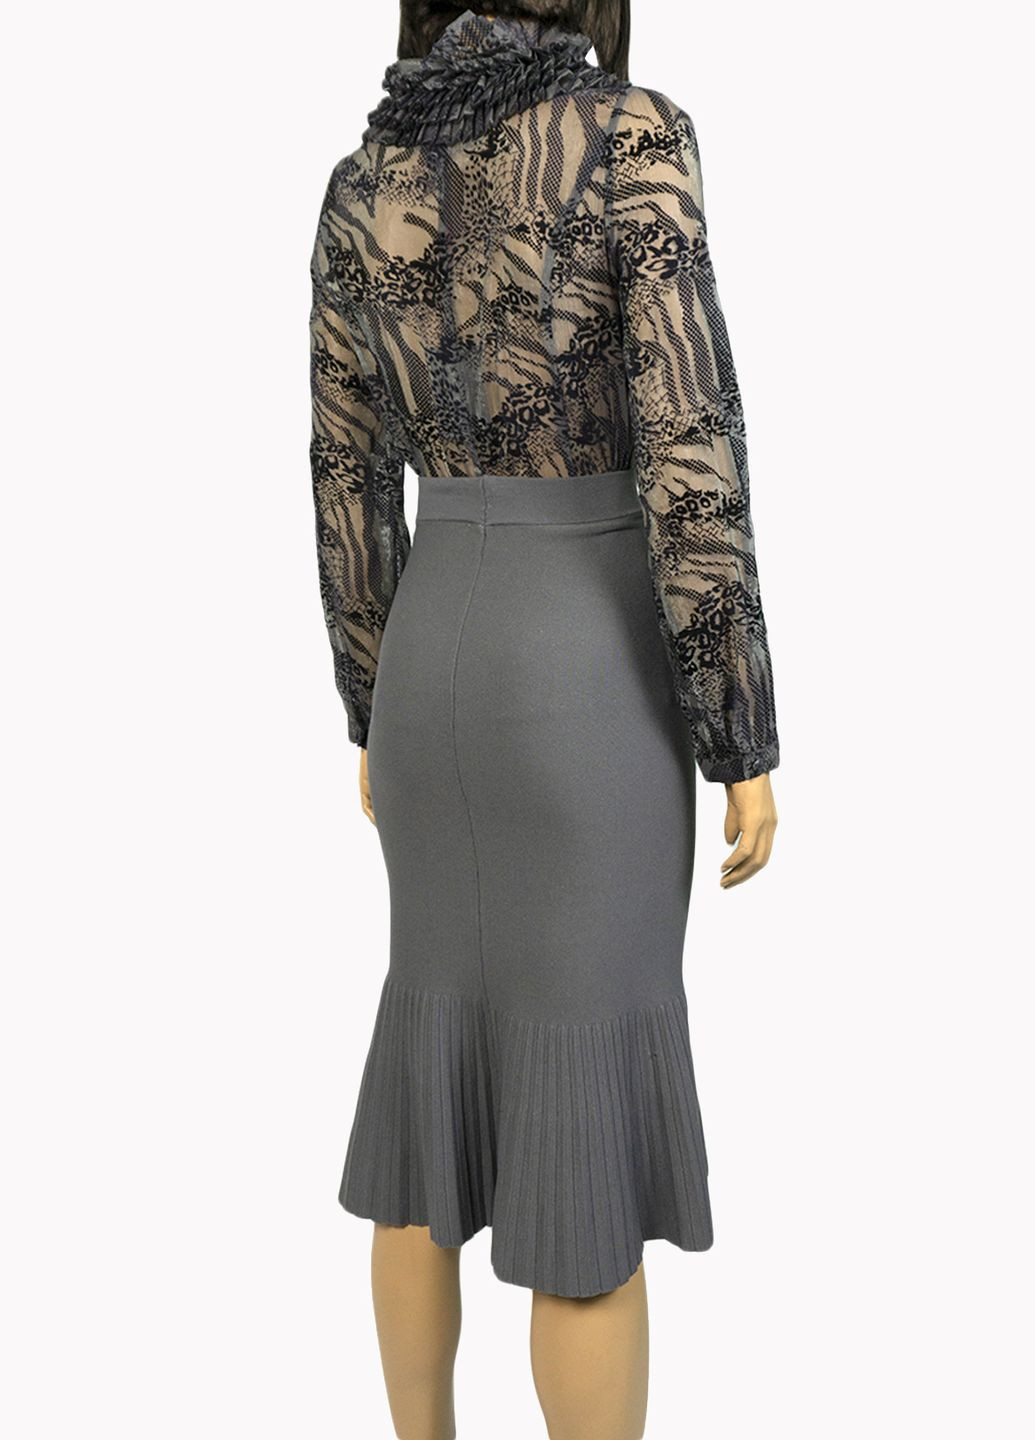 Серая демисезонная женская блуза с рюшами lw-116476-2 серый Lowett